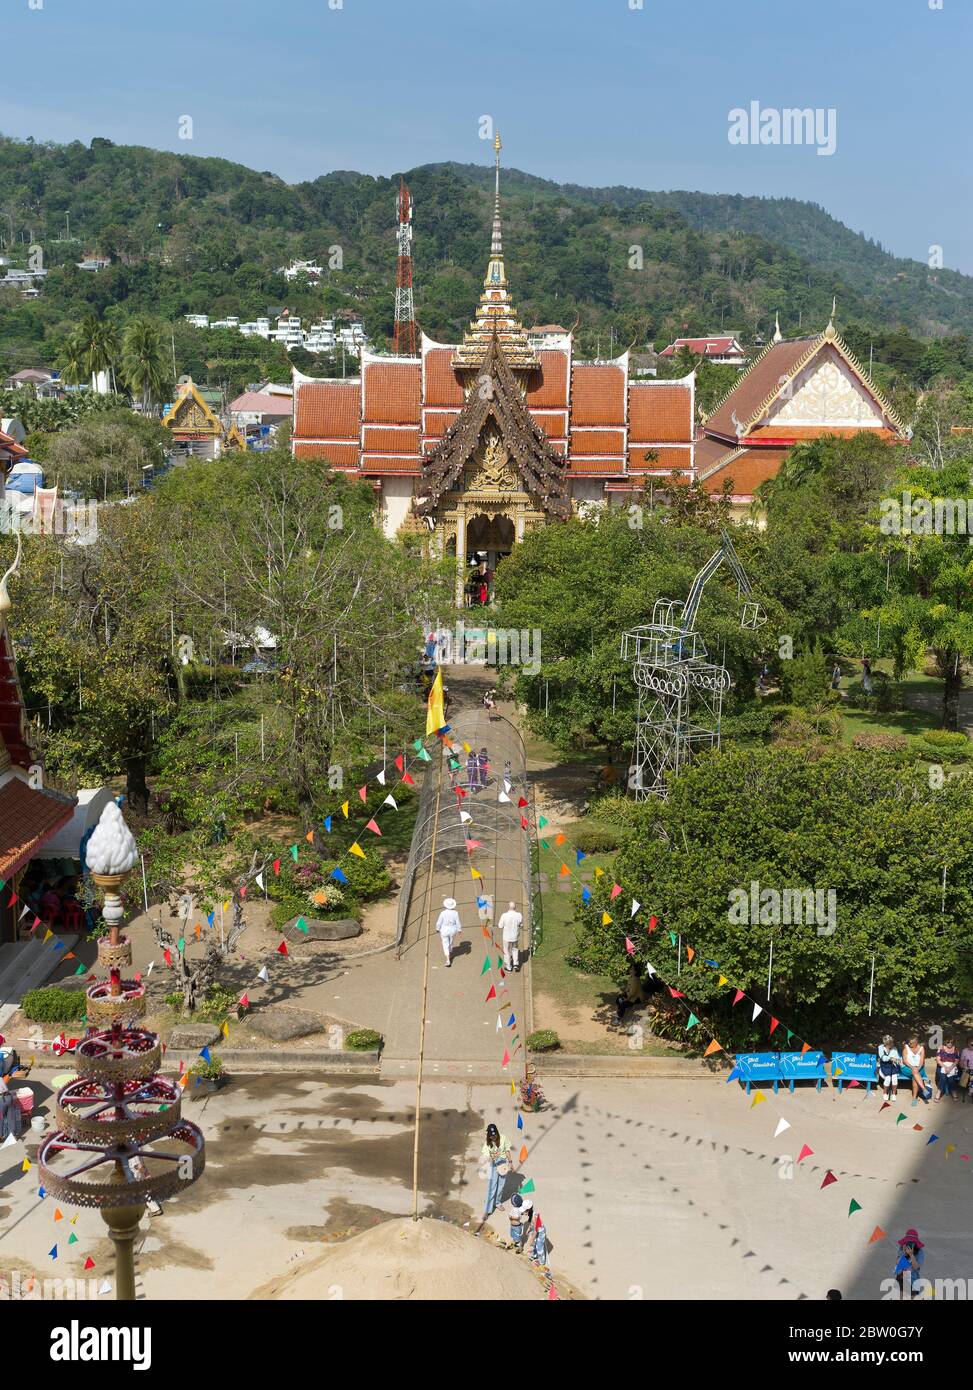 dh Wat chalong Buddhistischer Tempel PHUKET THAILAND Buddhismus Wat Chaiyathararam Tempel Gelände mit Touristen Stockfoto